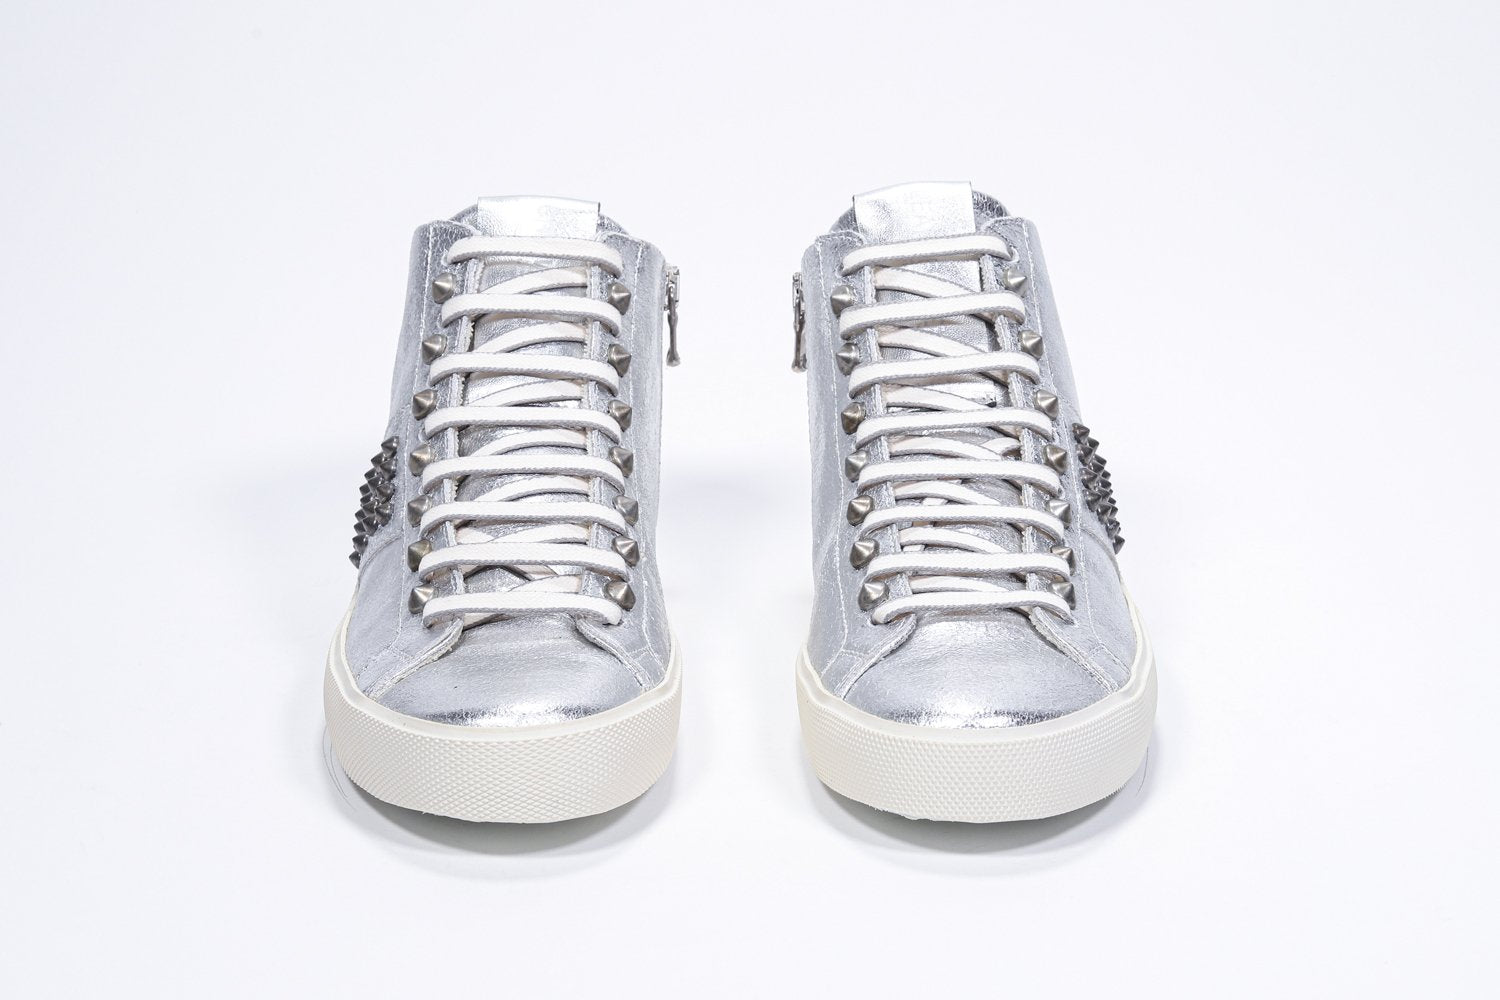 Vista frontale del modello mid top argento metallizzato sneaker. Tomaia in pelle con borchie, zip interna e suola in gomma vintage.